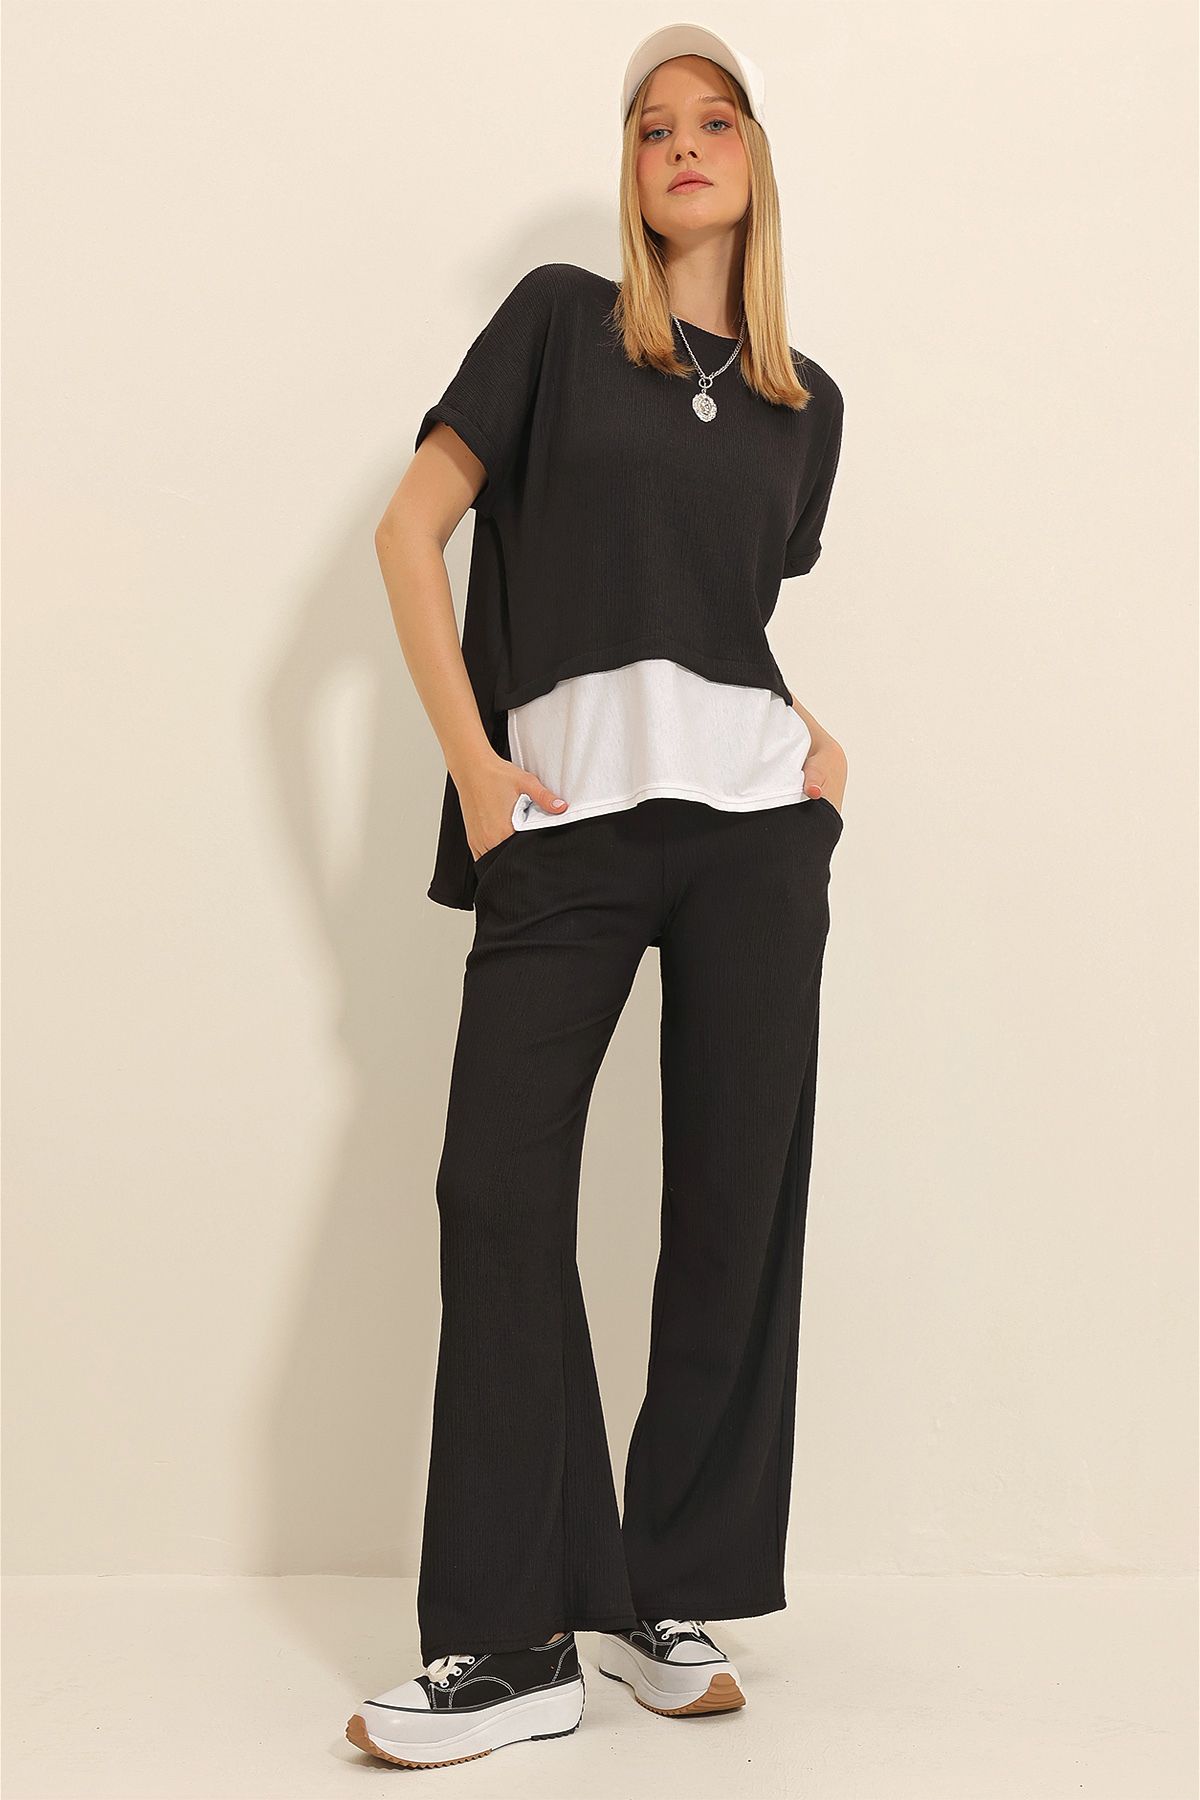 Trend Alaçatı Stili Kadın Siyah Bisiklet Yaka Eteği Garnili Bluz Ve Palazzo Pantolon İkili Krinkıl Takım ALC-X11340